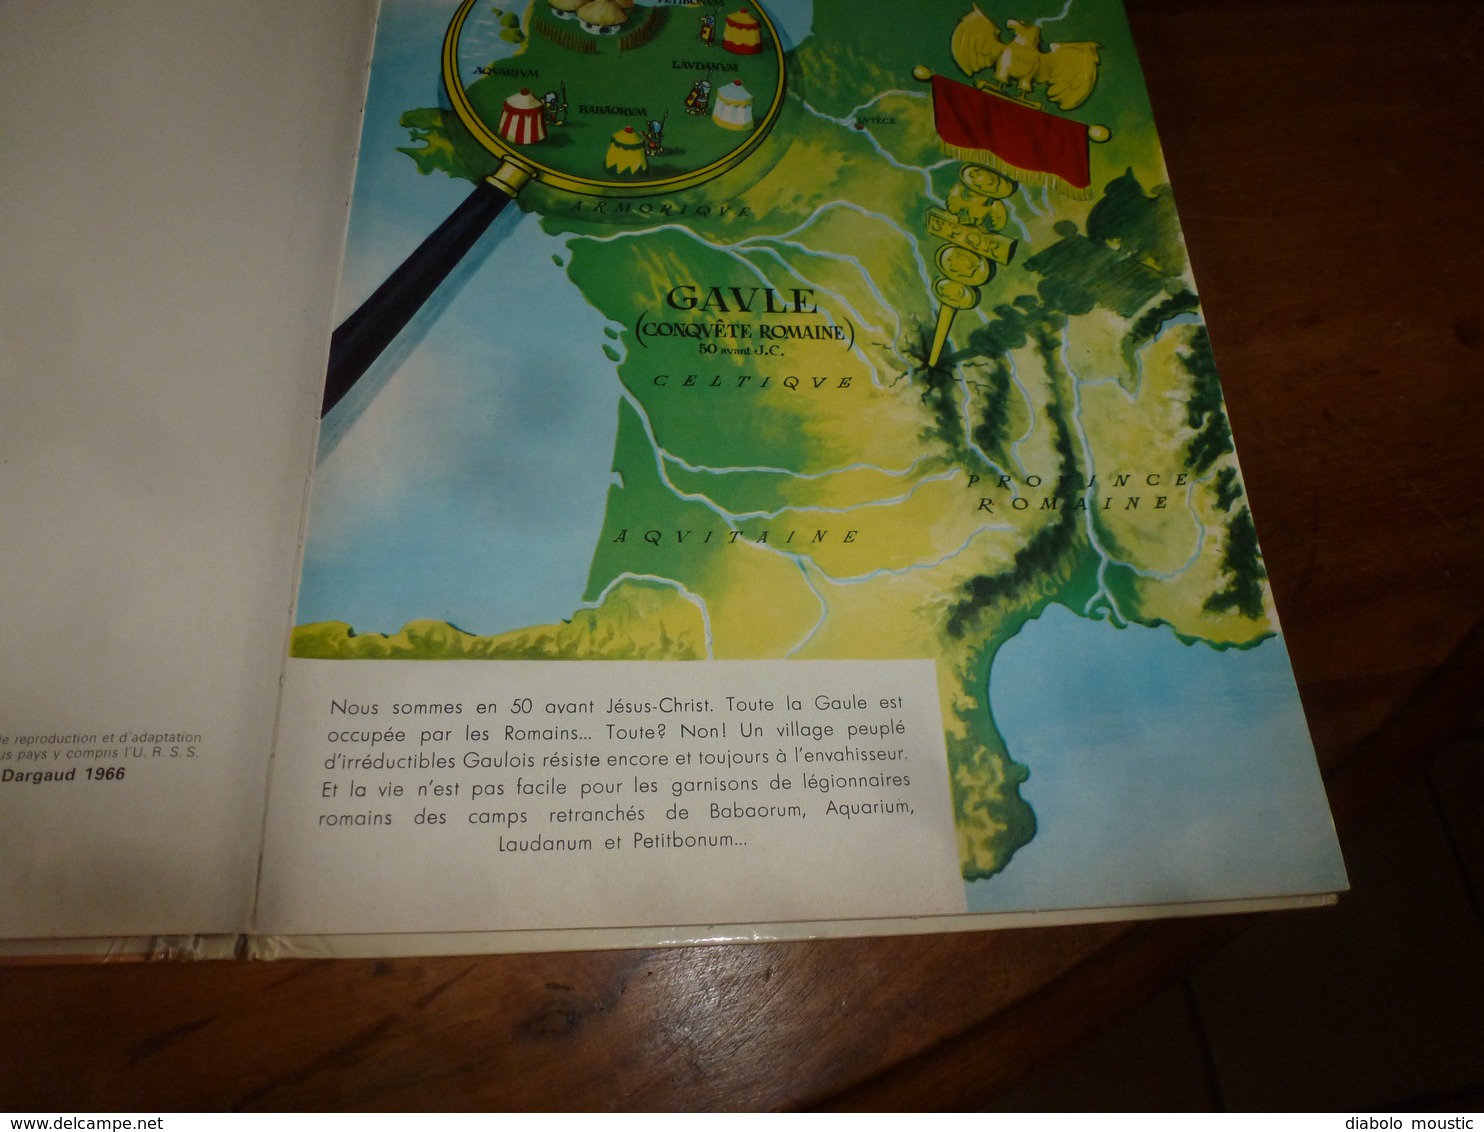 1966  Astérix et les normands  - 4e édition 1966 -             Editeur N° 190